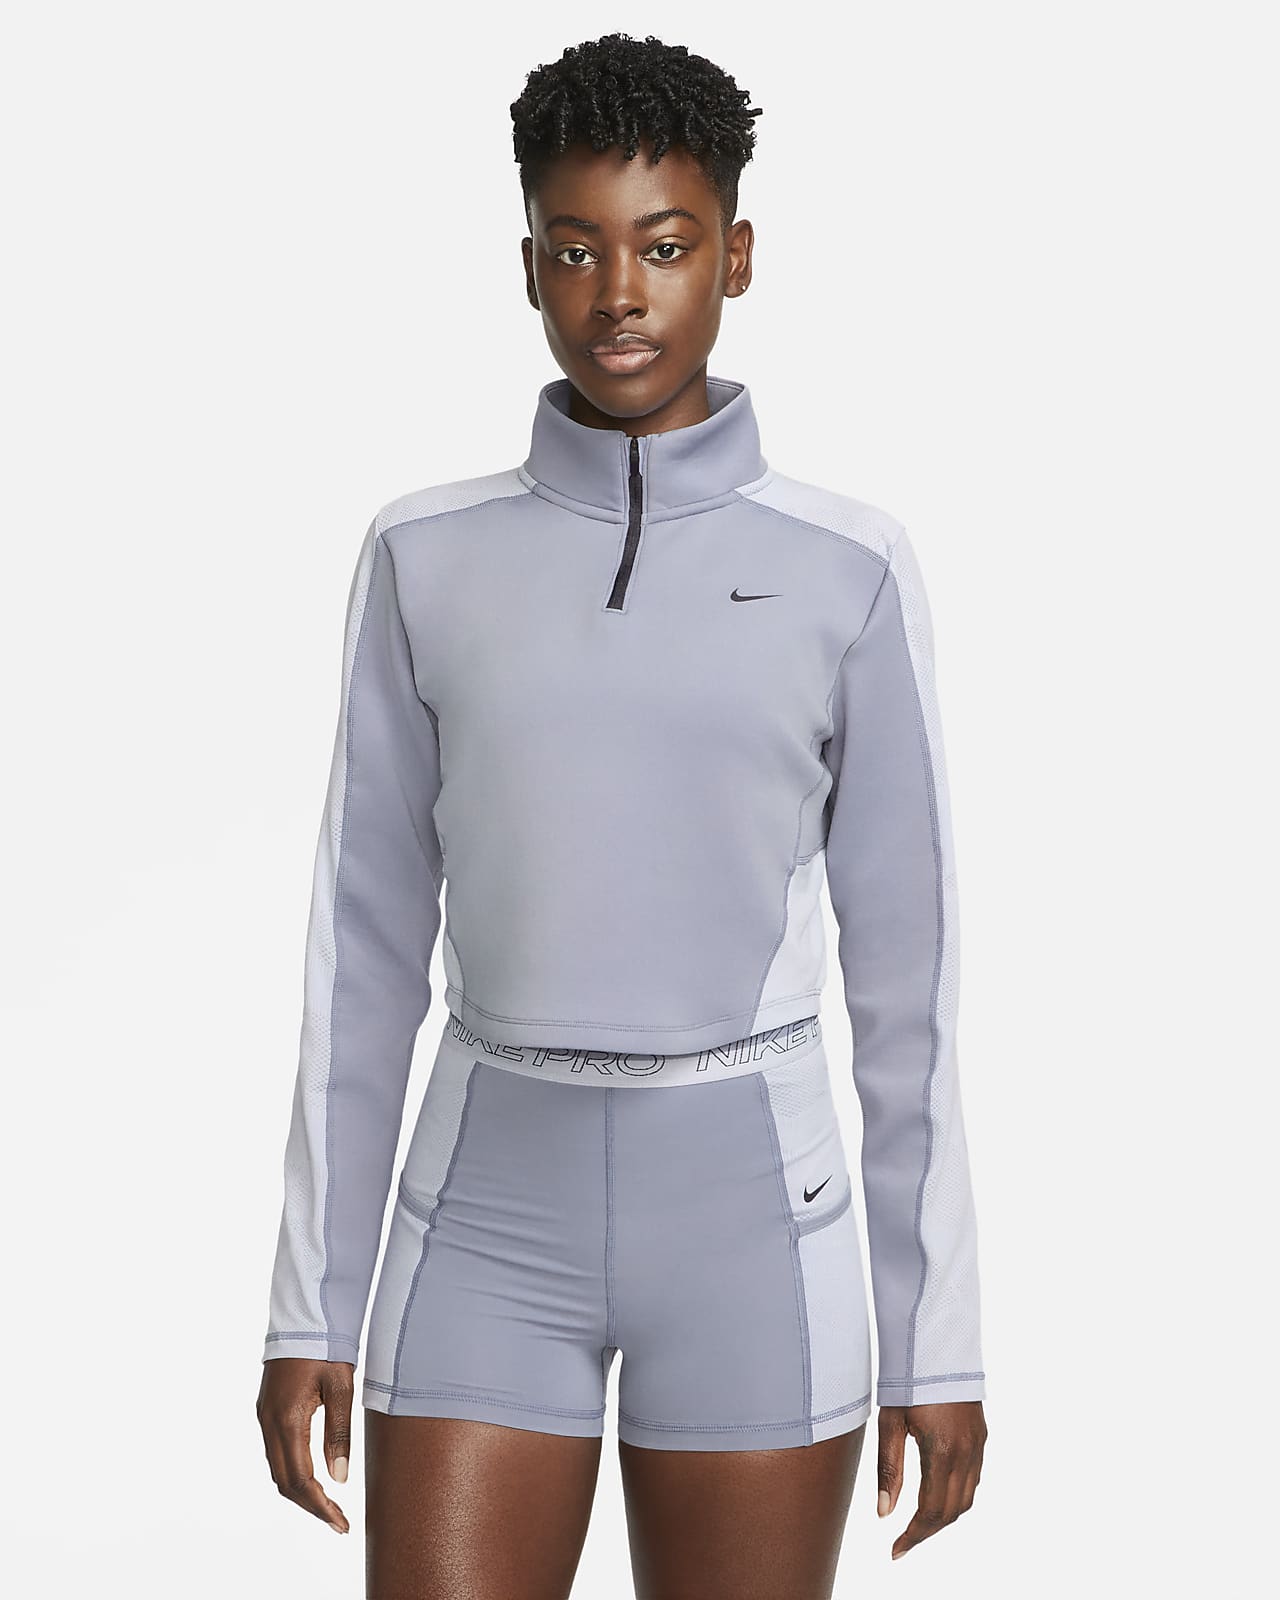 Regulering I nåde af Modernisere Langærmet Nike Dri-FIT-træningsoverdel med 1/4 lynlås til kvinder. Nike DK